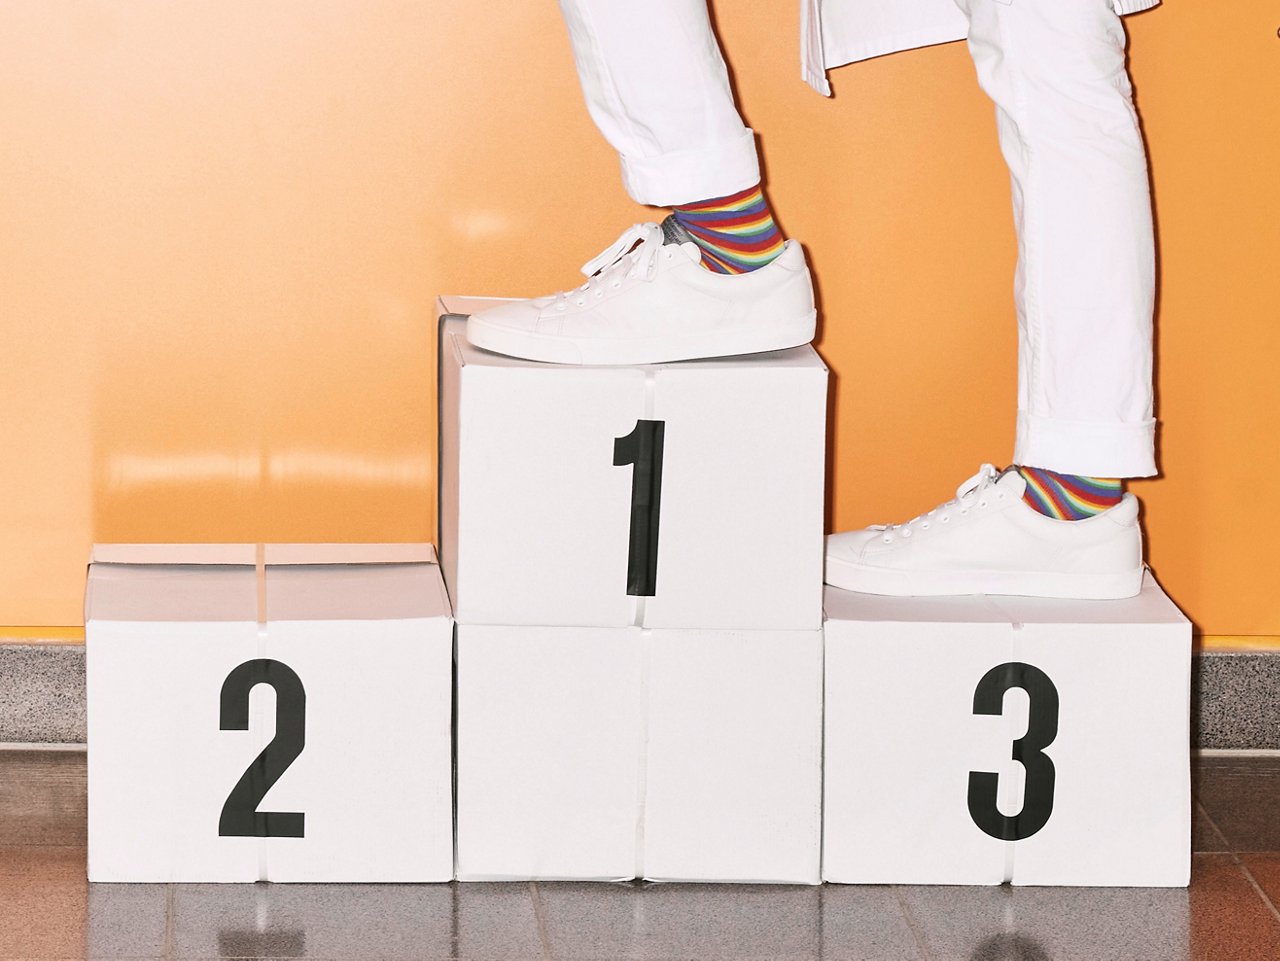 Arzt besteigt Siegertreppchen mit bunten Helios Socken und Sneakern #EchtesLeben 2022/23